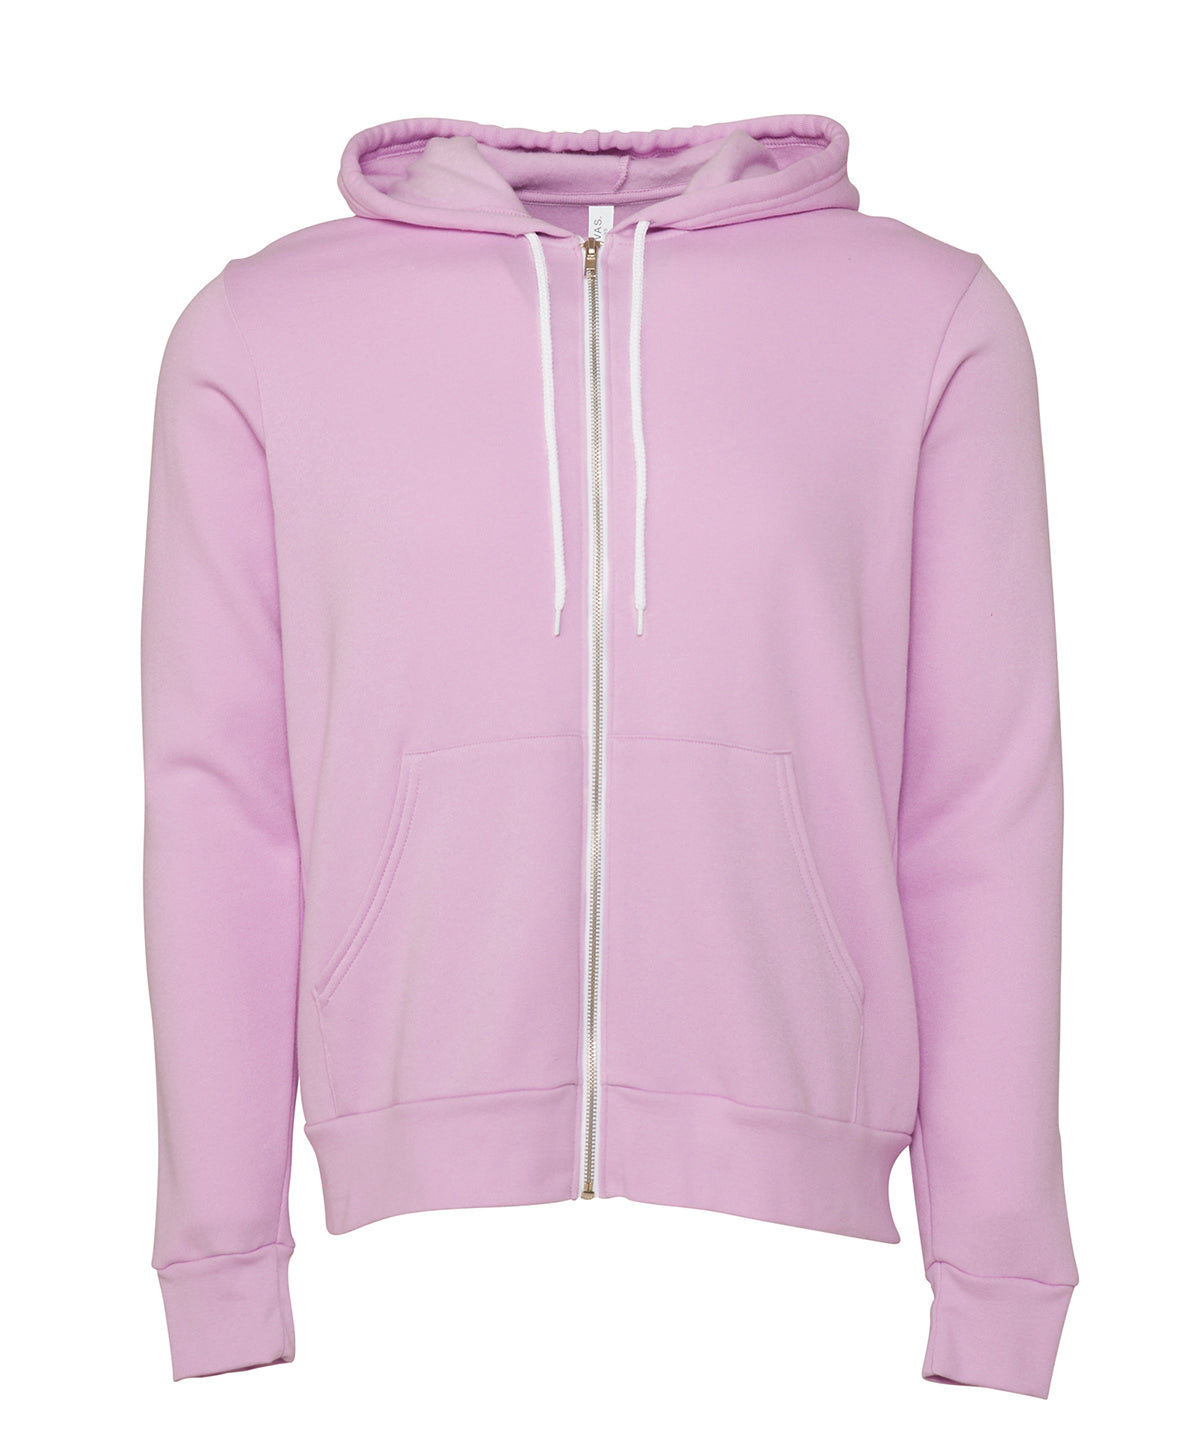 Personalised Hoodies - Black Bella Canvas Unisex polycotton fleece full-zip hoodie